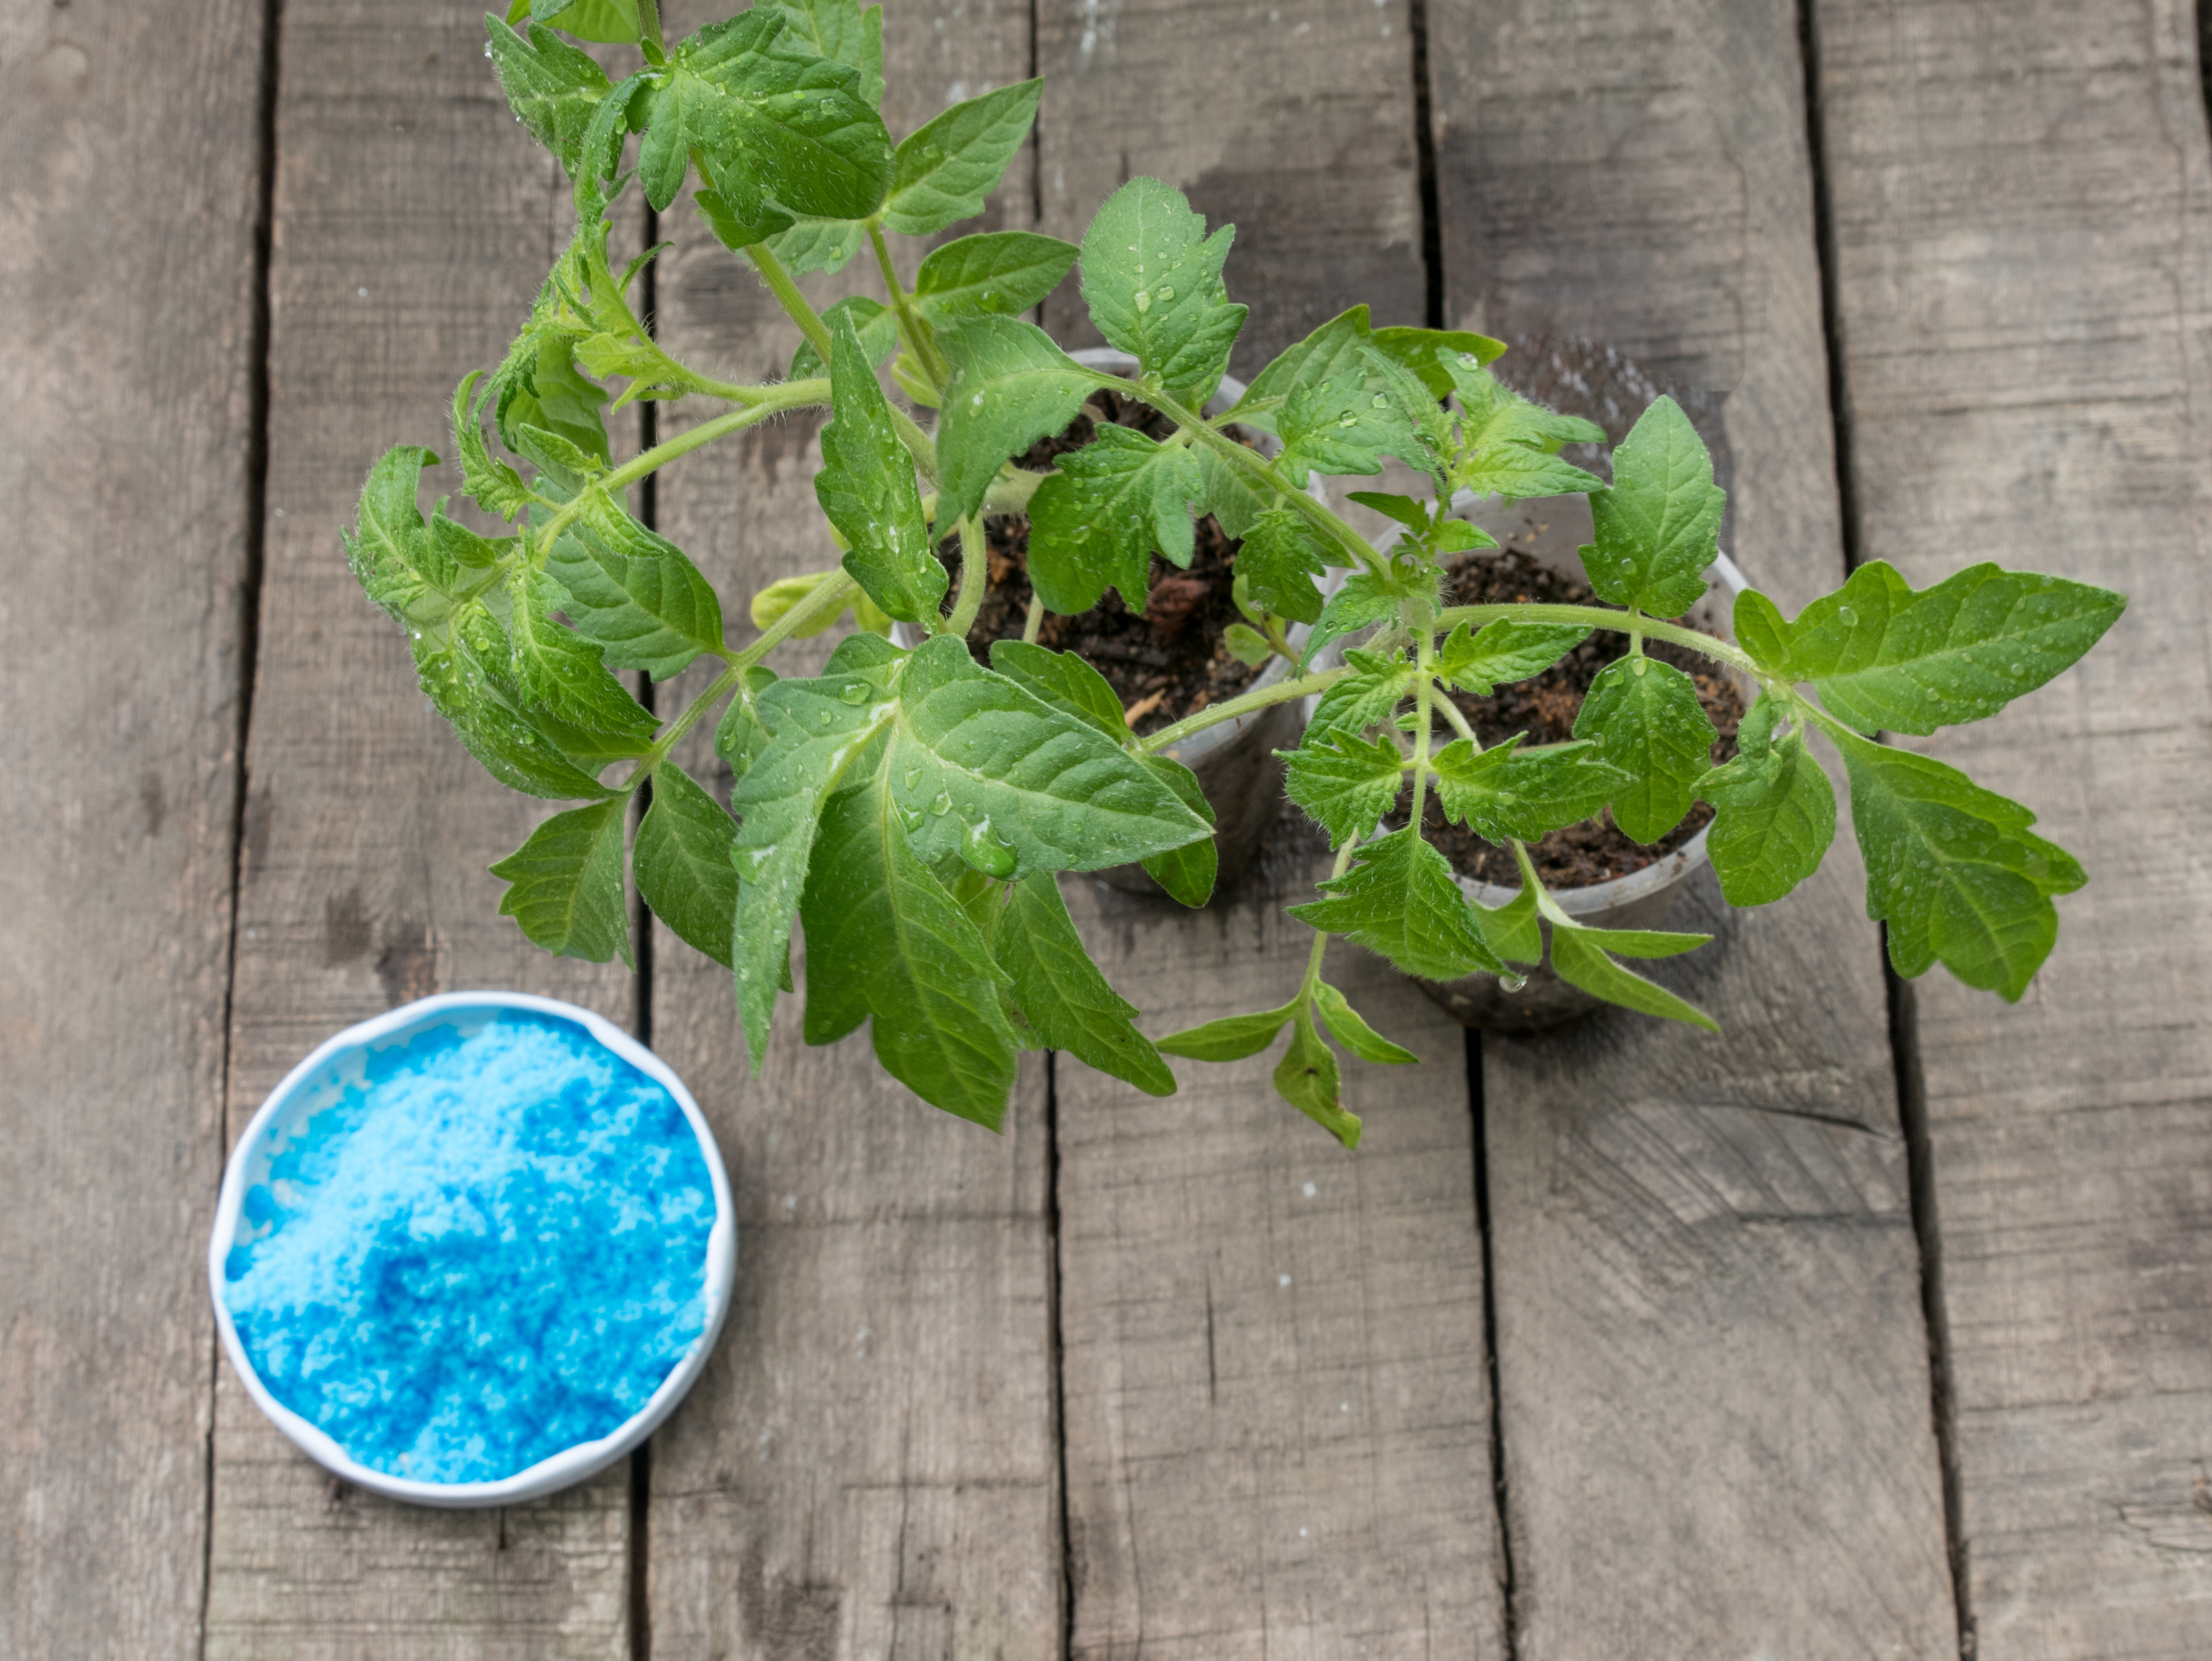 Vendue sous la forme d’une poudre bleue à diluer, la bouillie bordelaise doit être préparée en respectant des dosages spécifiques pour chaque type de plante.